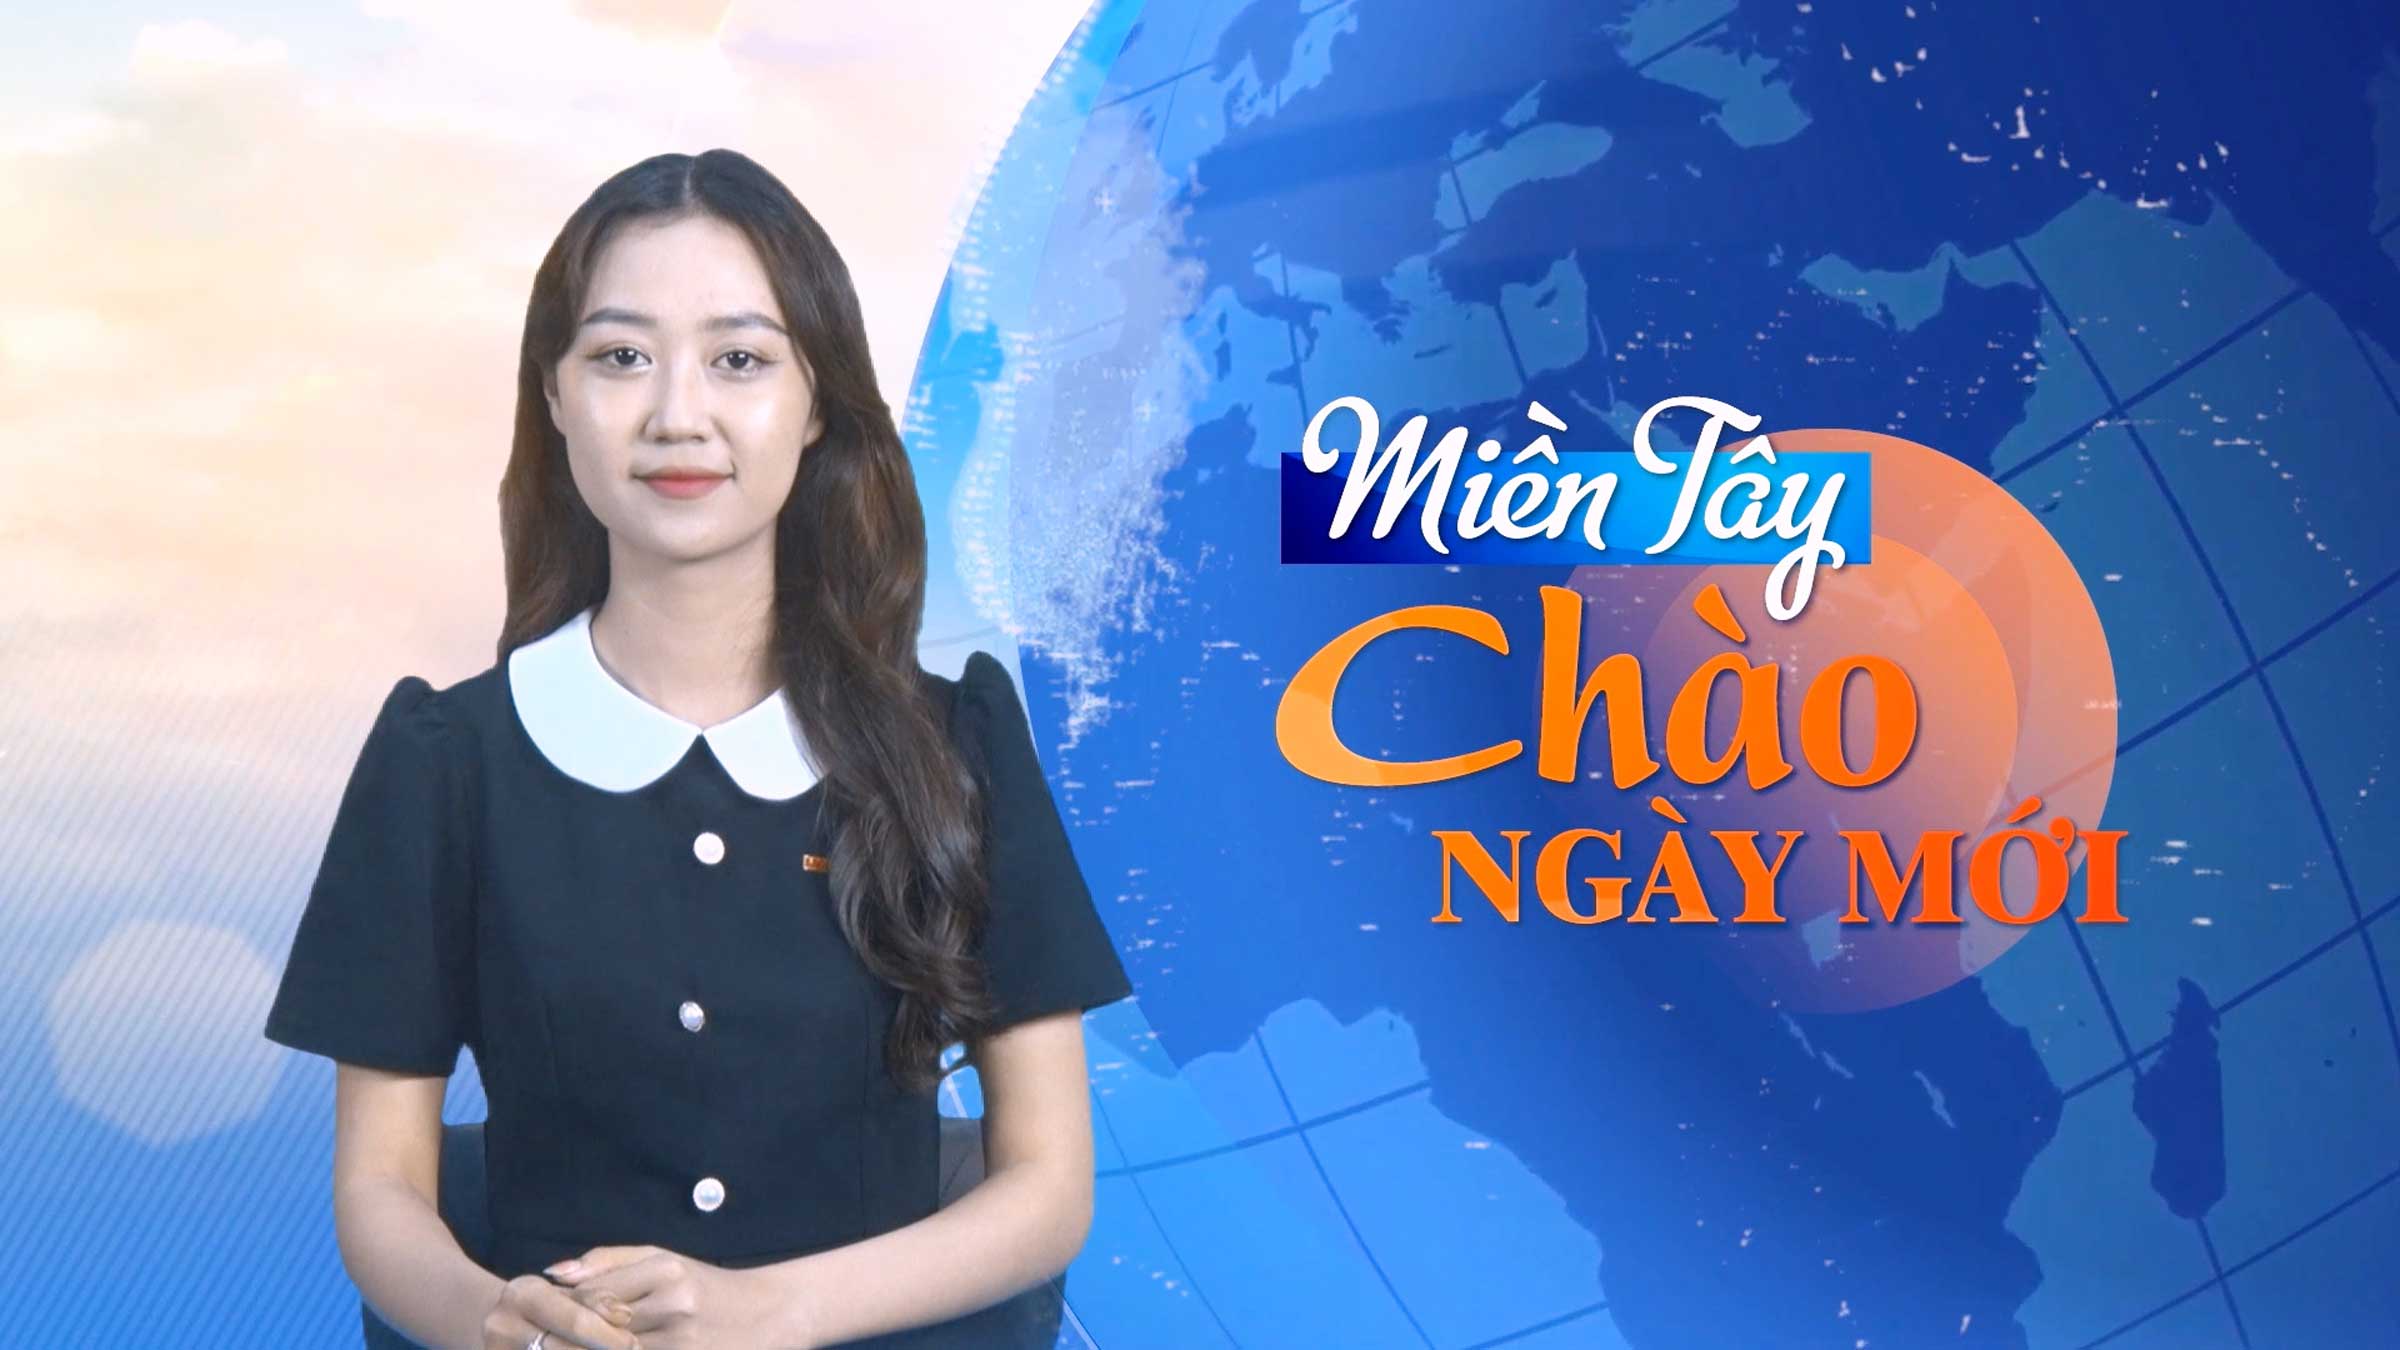 Miền Tây Chào Ngày Mới: Diễn biến mới liên quan đến Tịnh thất Bồng Lai